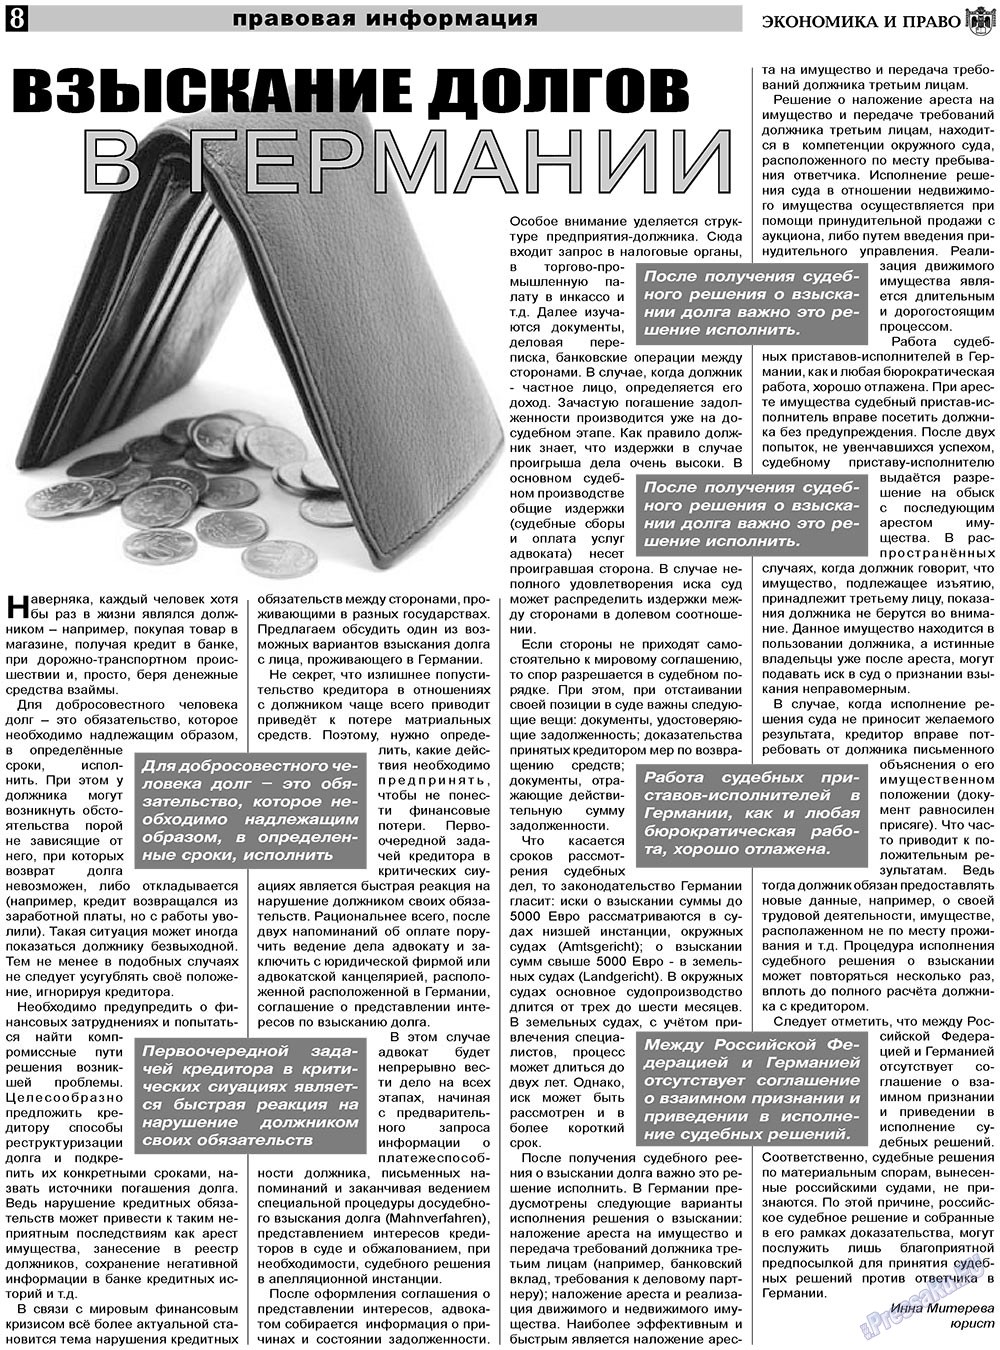 Экономика и право, газета. 2011 №4 стр.8